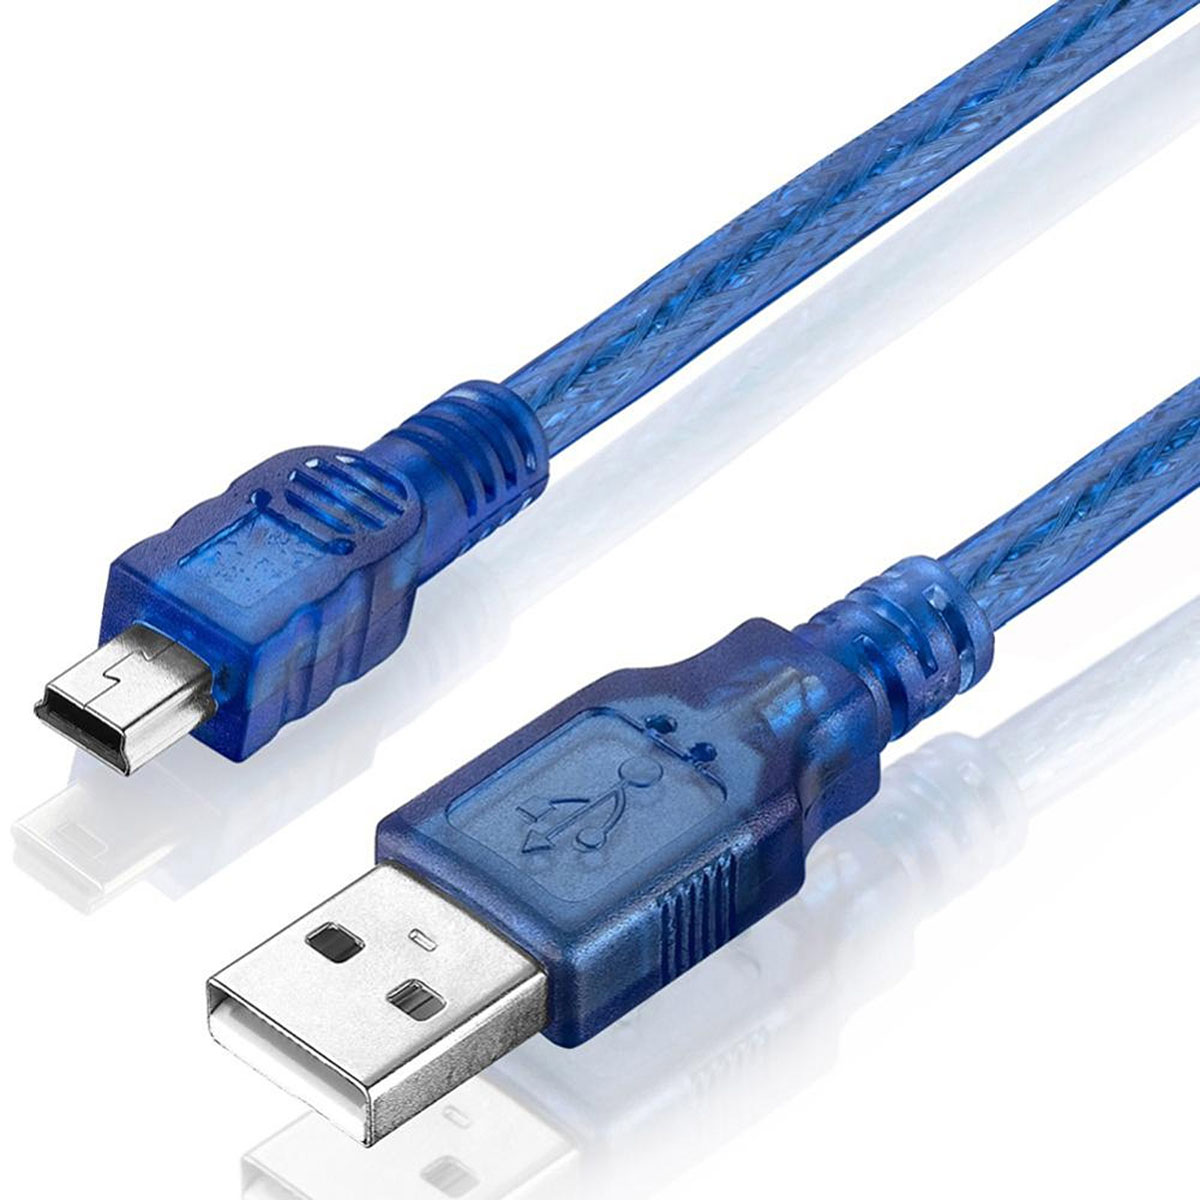 Кабель Mini USB D10 V3, длина 1.5 метра, цвет синий.